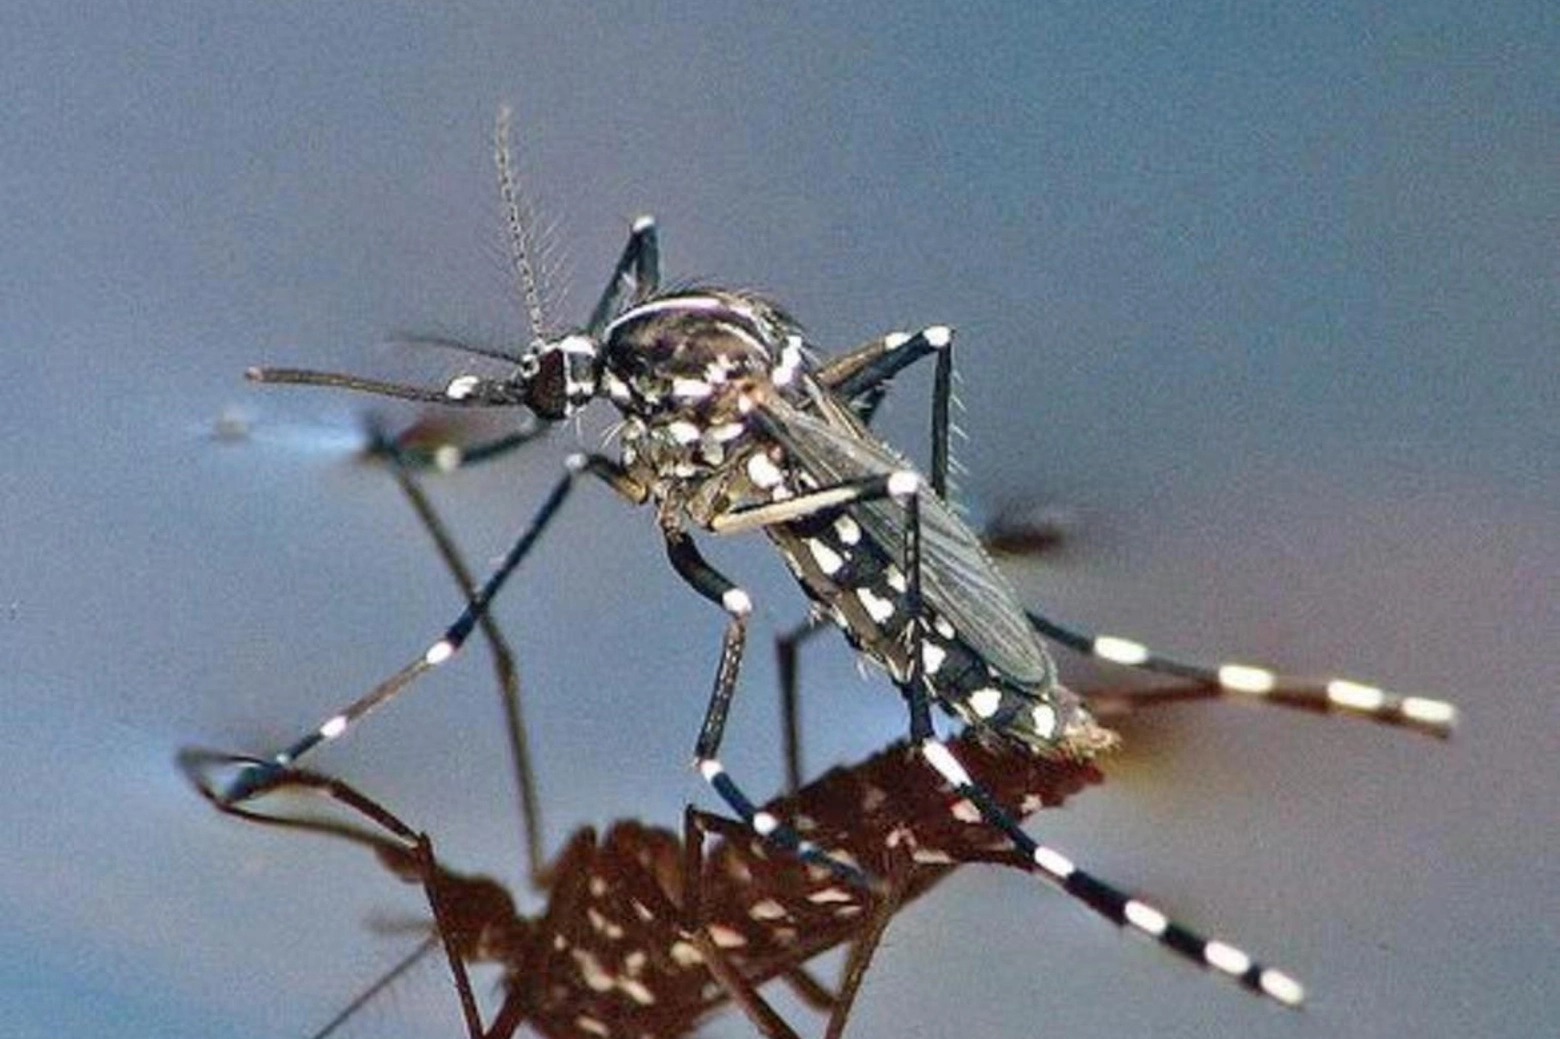 Quest'anno si prevede una presenza massiccia della zanzara tigre, complici le temperature